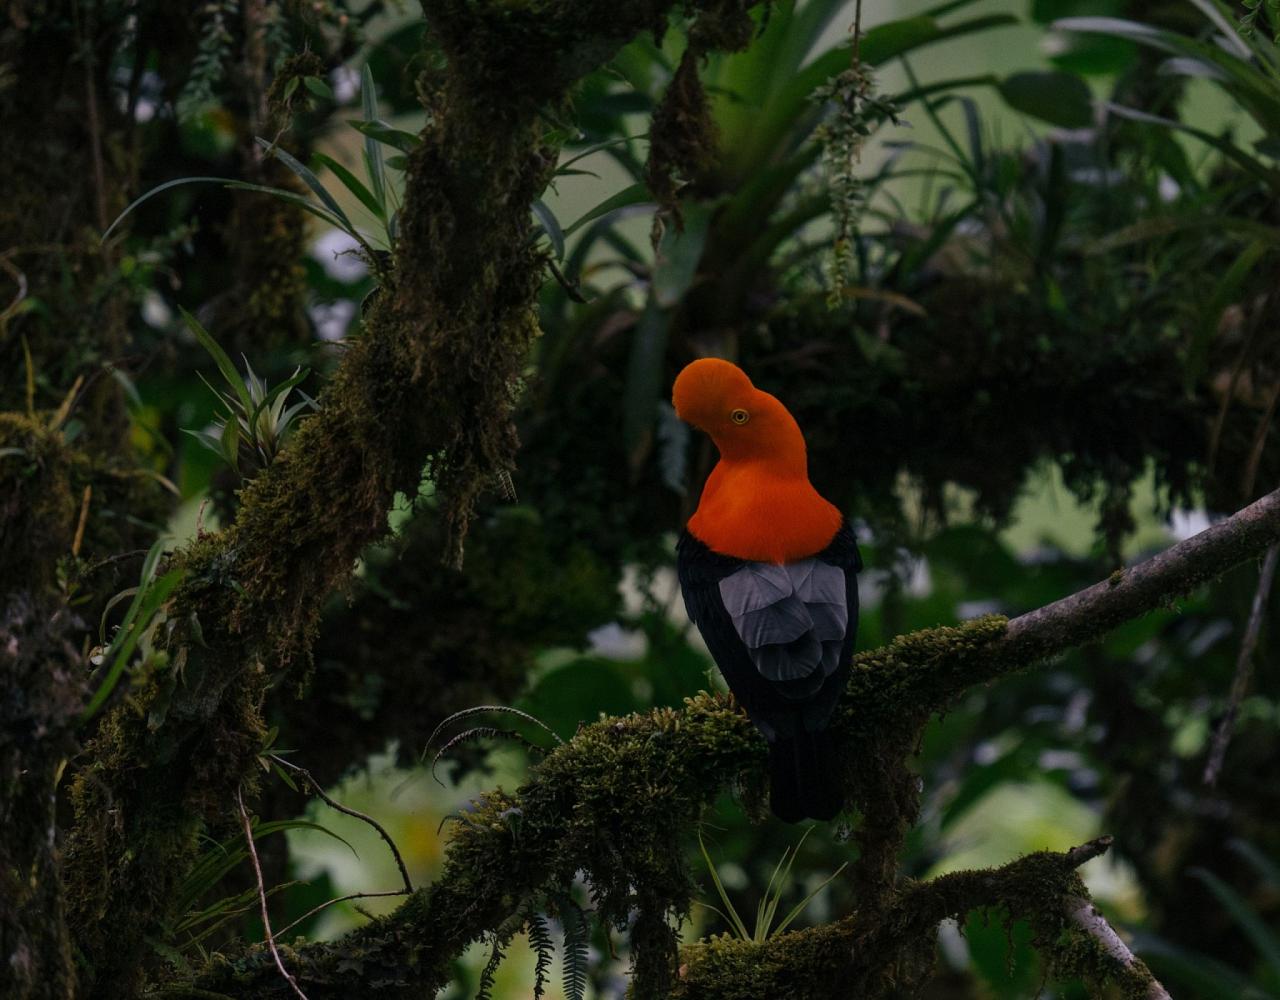 Birding Ecuador, Bird watching Ecuador, Ecuador, South American Birds, Naturalist Journeys, Wildlife Tour, Wildlife Photography, Ecotourism, Specialty Birds, Endemic Birds, Birding Hotspot